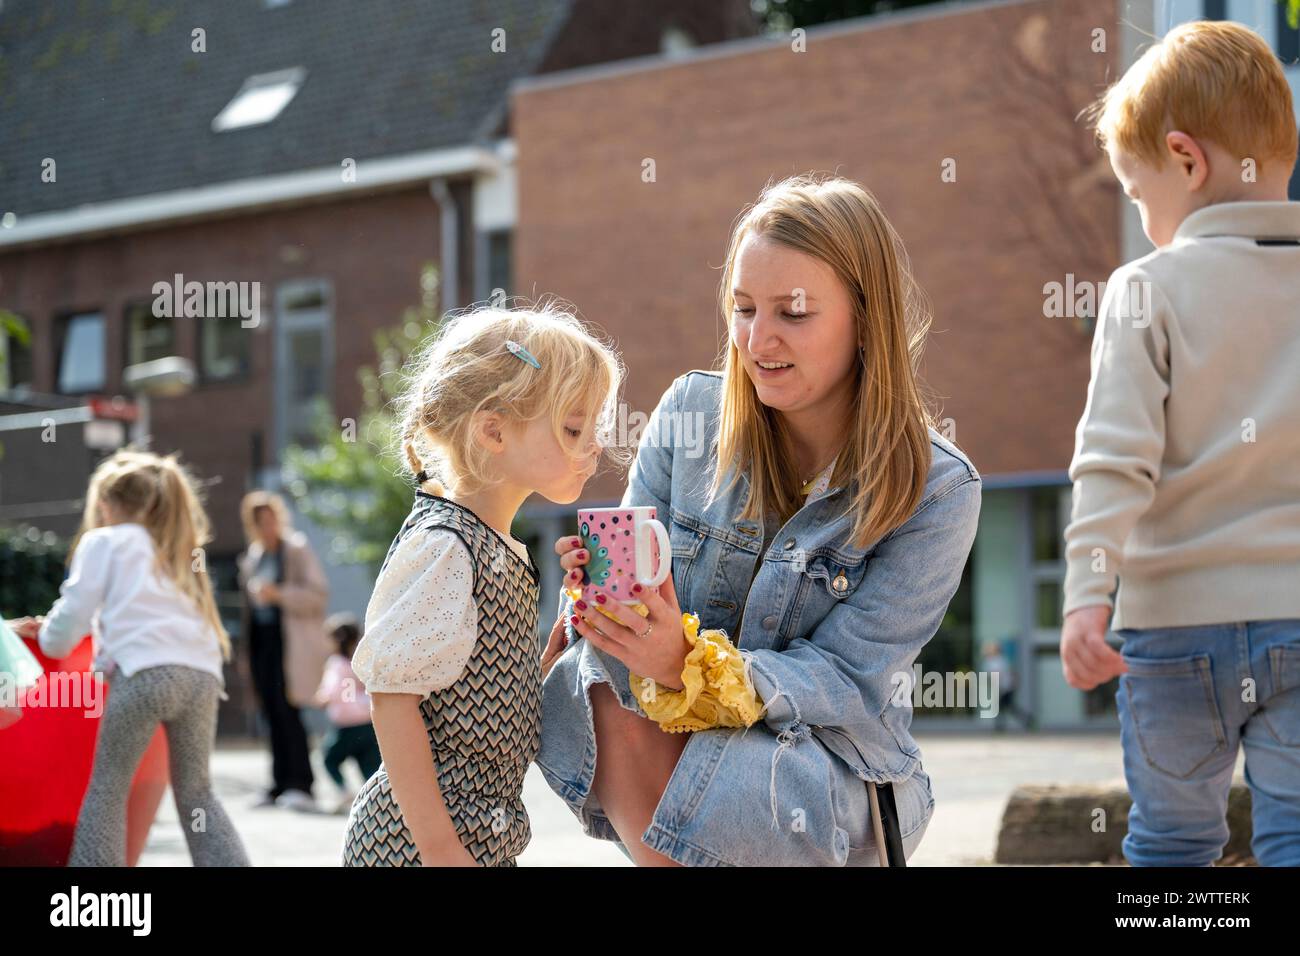 Ein fröhlicher Outdoor-Moment, in dem eine Frau etwas amüsantes auf ihrem Smartphone mit einem kleinen Mädchen teilt Stockfoto